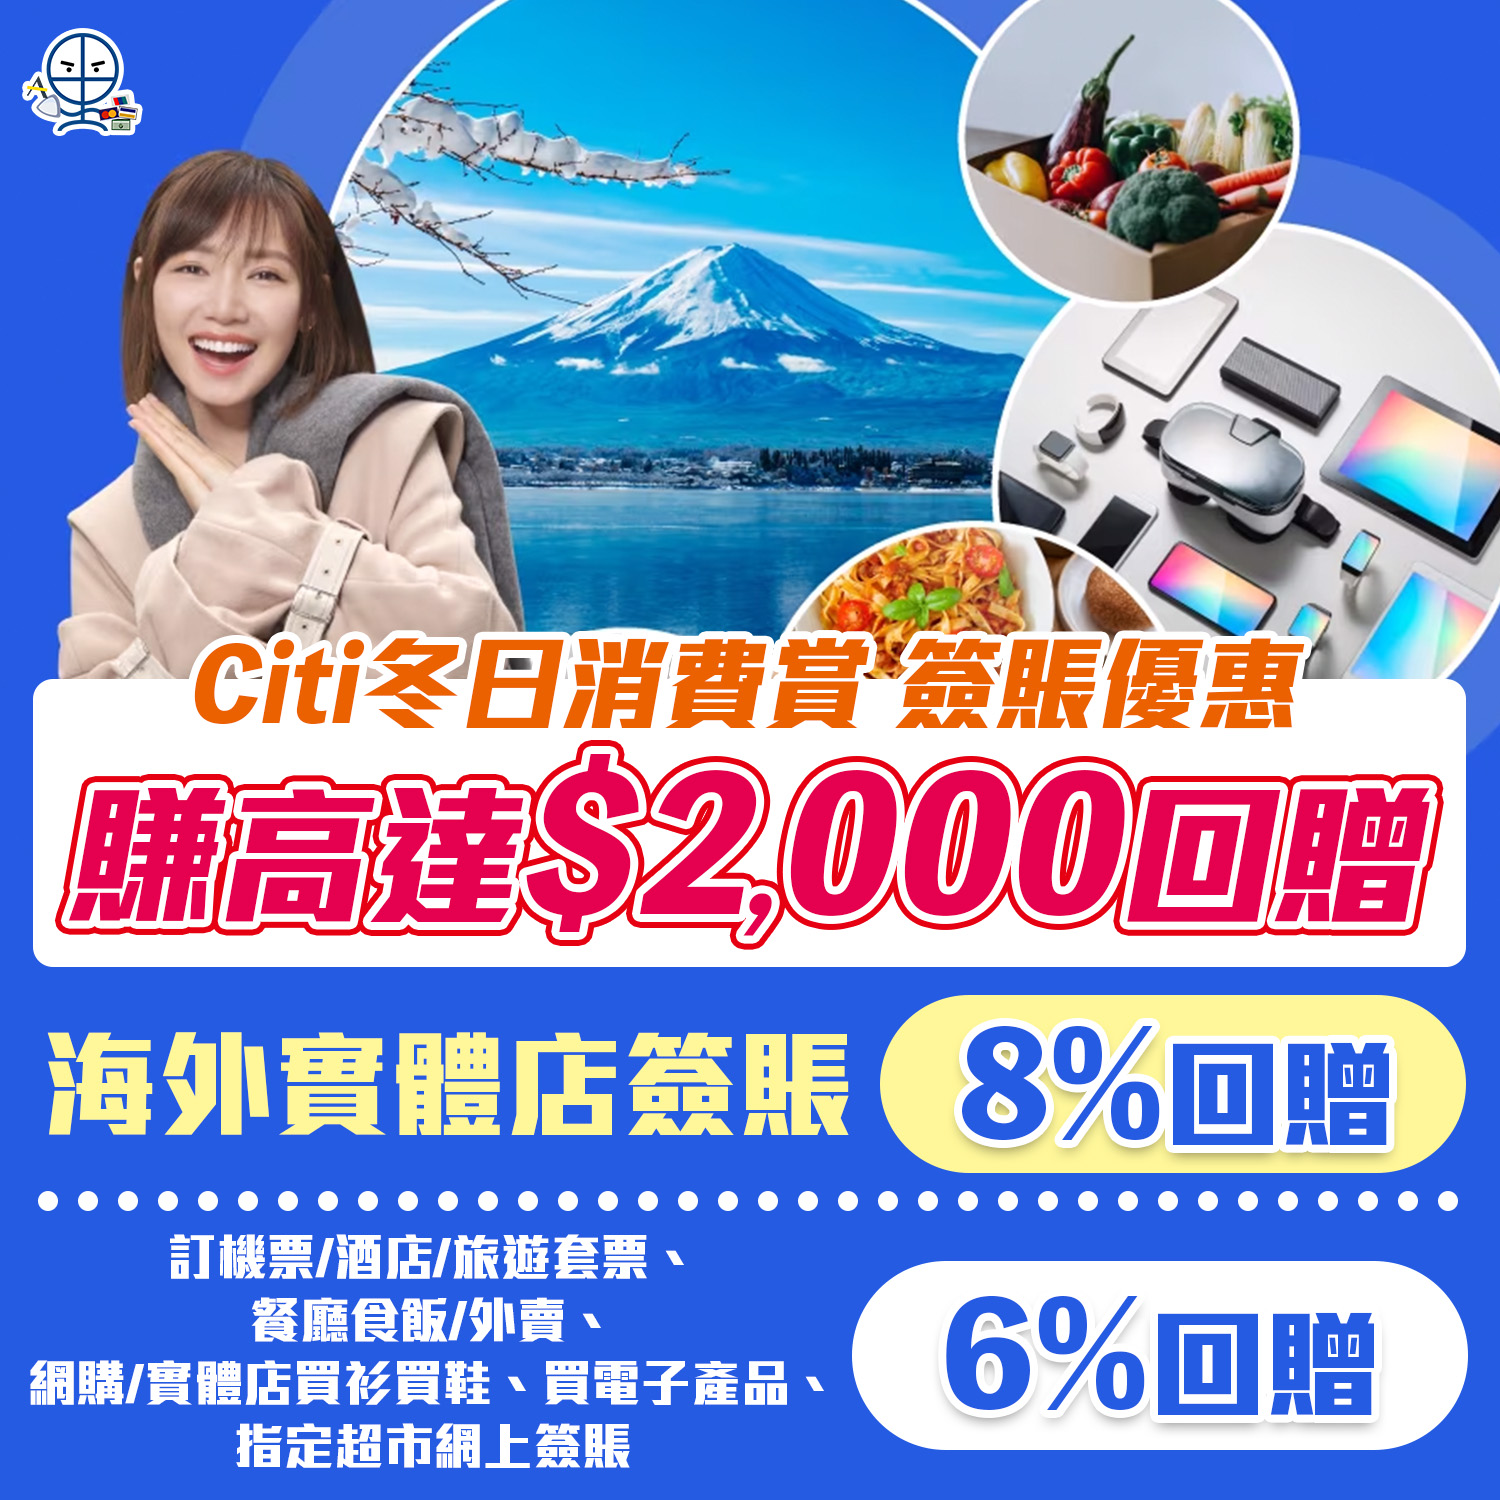 【Citi 冬日消費賞】Citi信用卡外幣簽賬、訂機票/酒店/旅遊套票、日常指定消費都有份，可賺合共額外高達HK$2,000回贈！